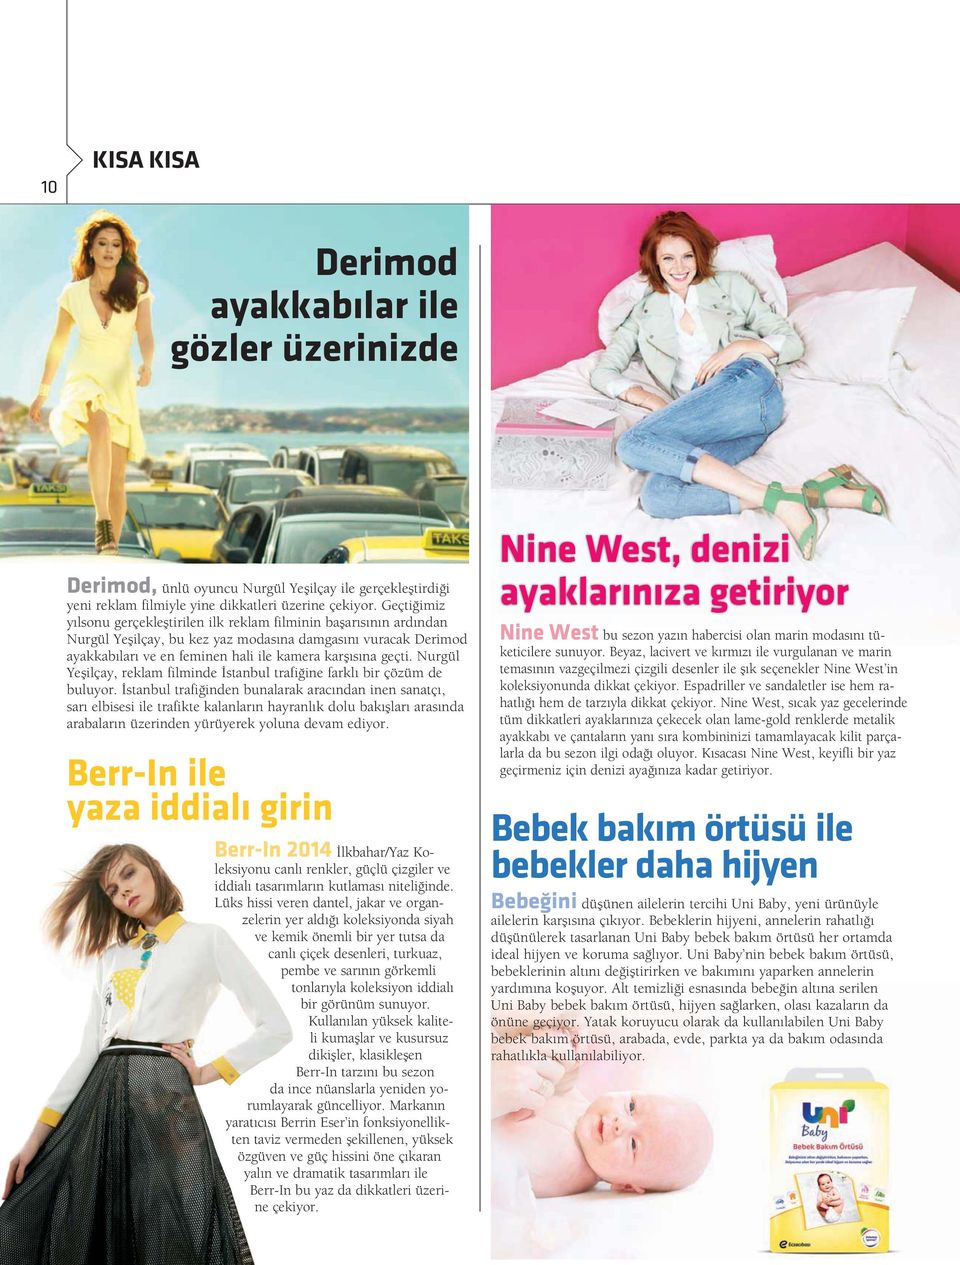 Nurgül Yeşilçay, reklam filminde İstanbul trafiğine farklı bir çözüm de buluyor.